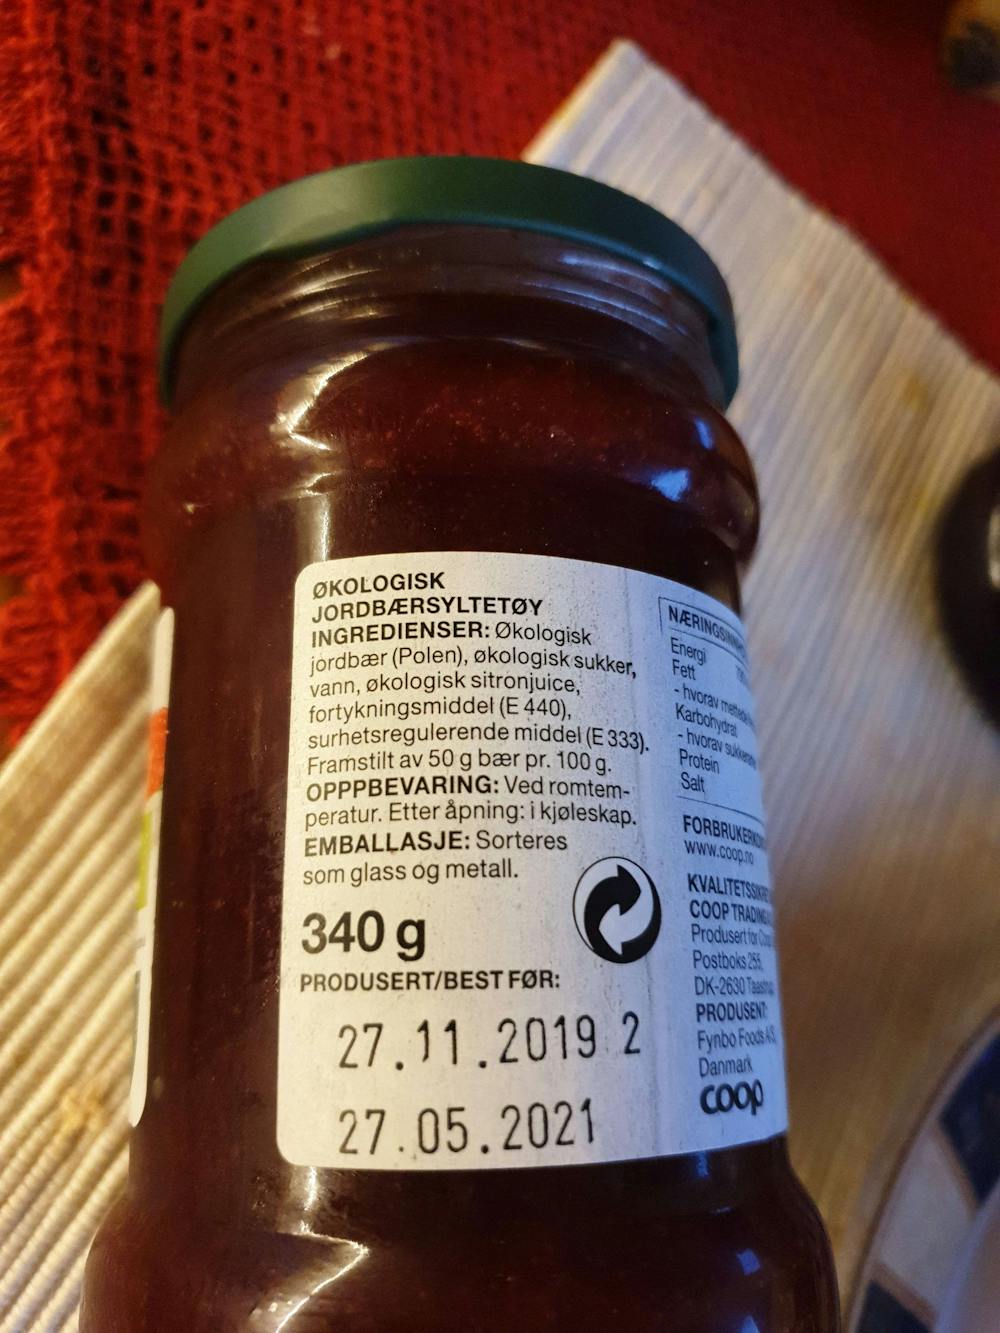 Ingrediensliste - Jordbærsyltetøy, økologisk, Coop Änglamark